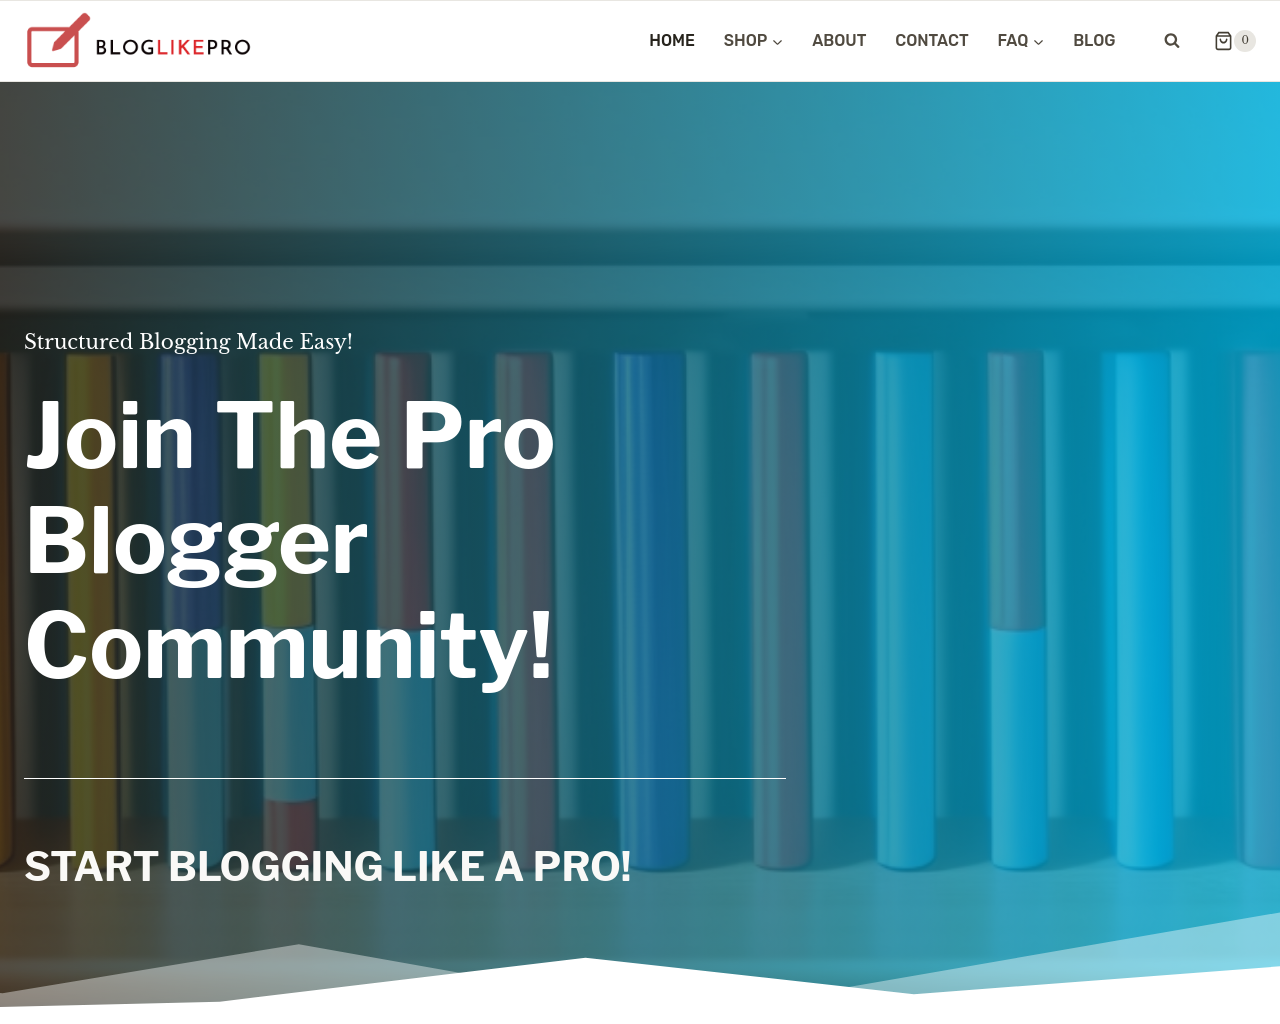 bloglikepro.com